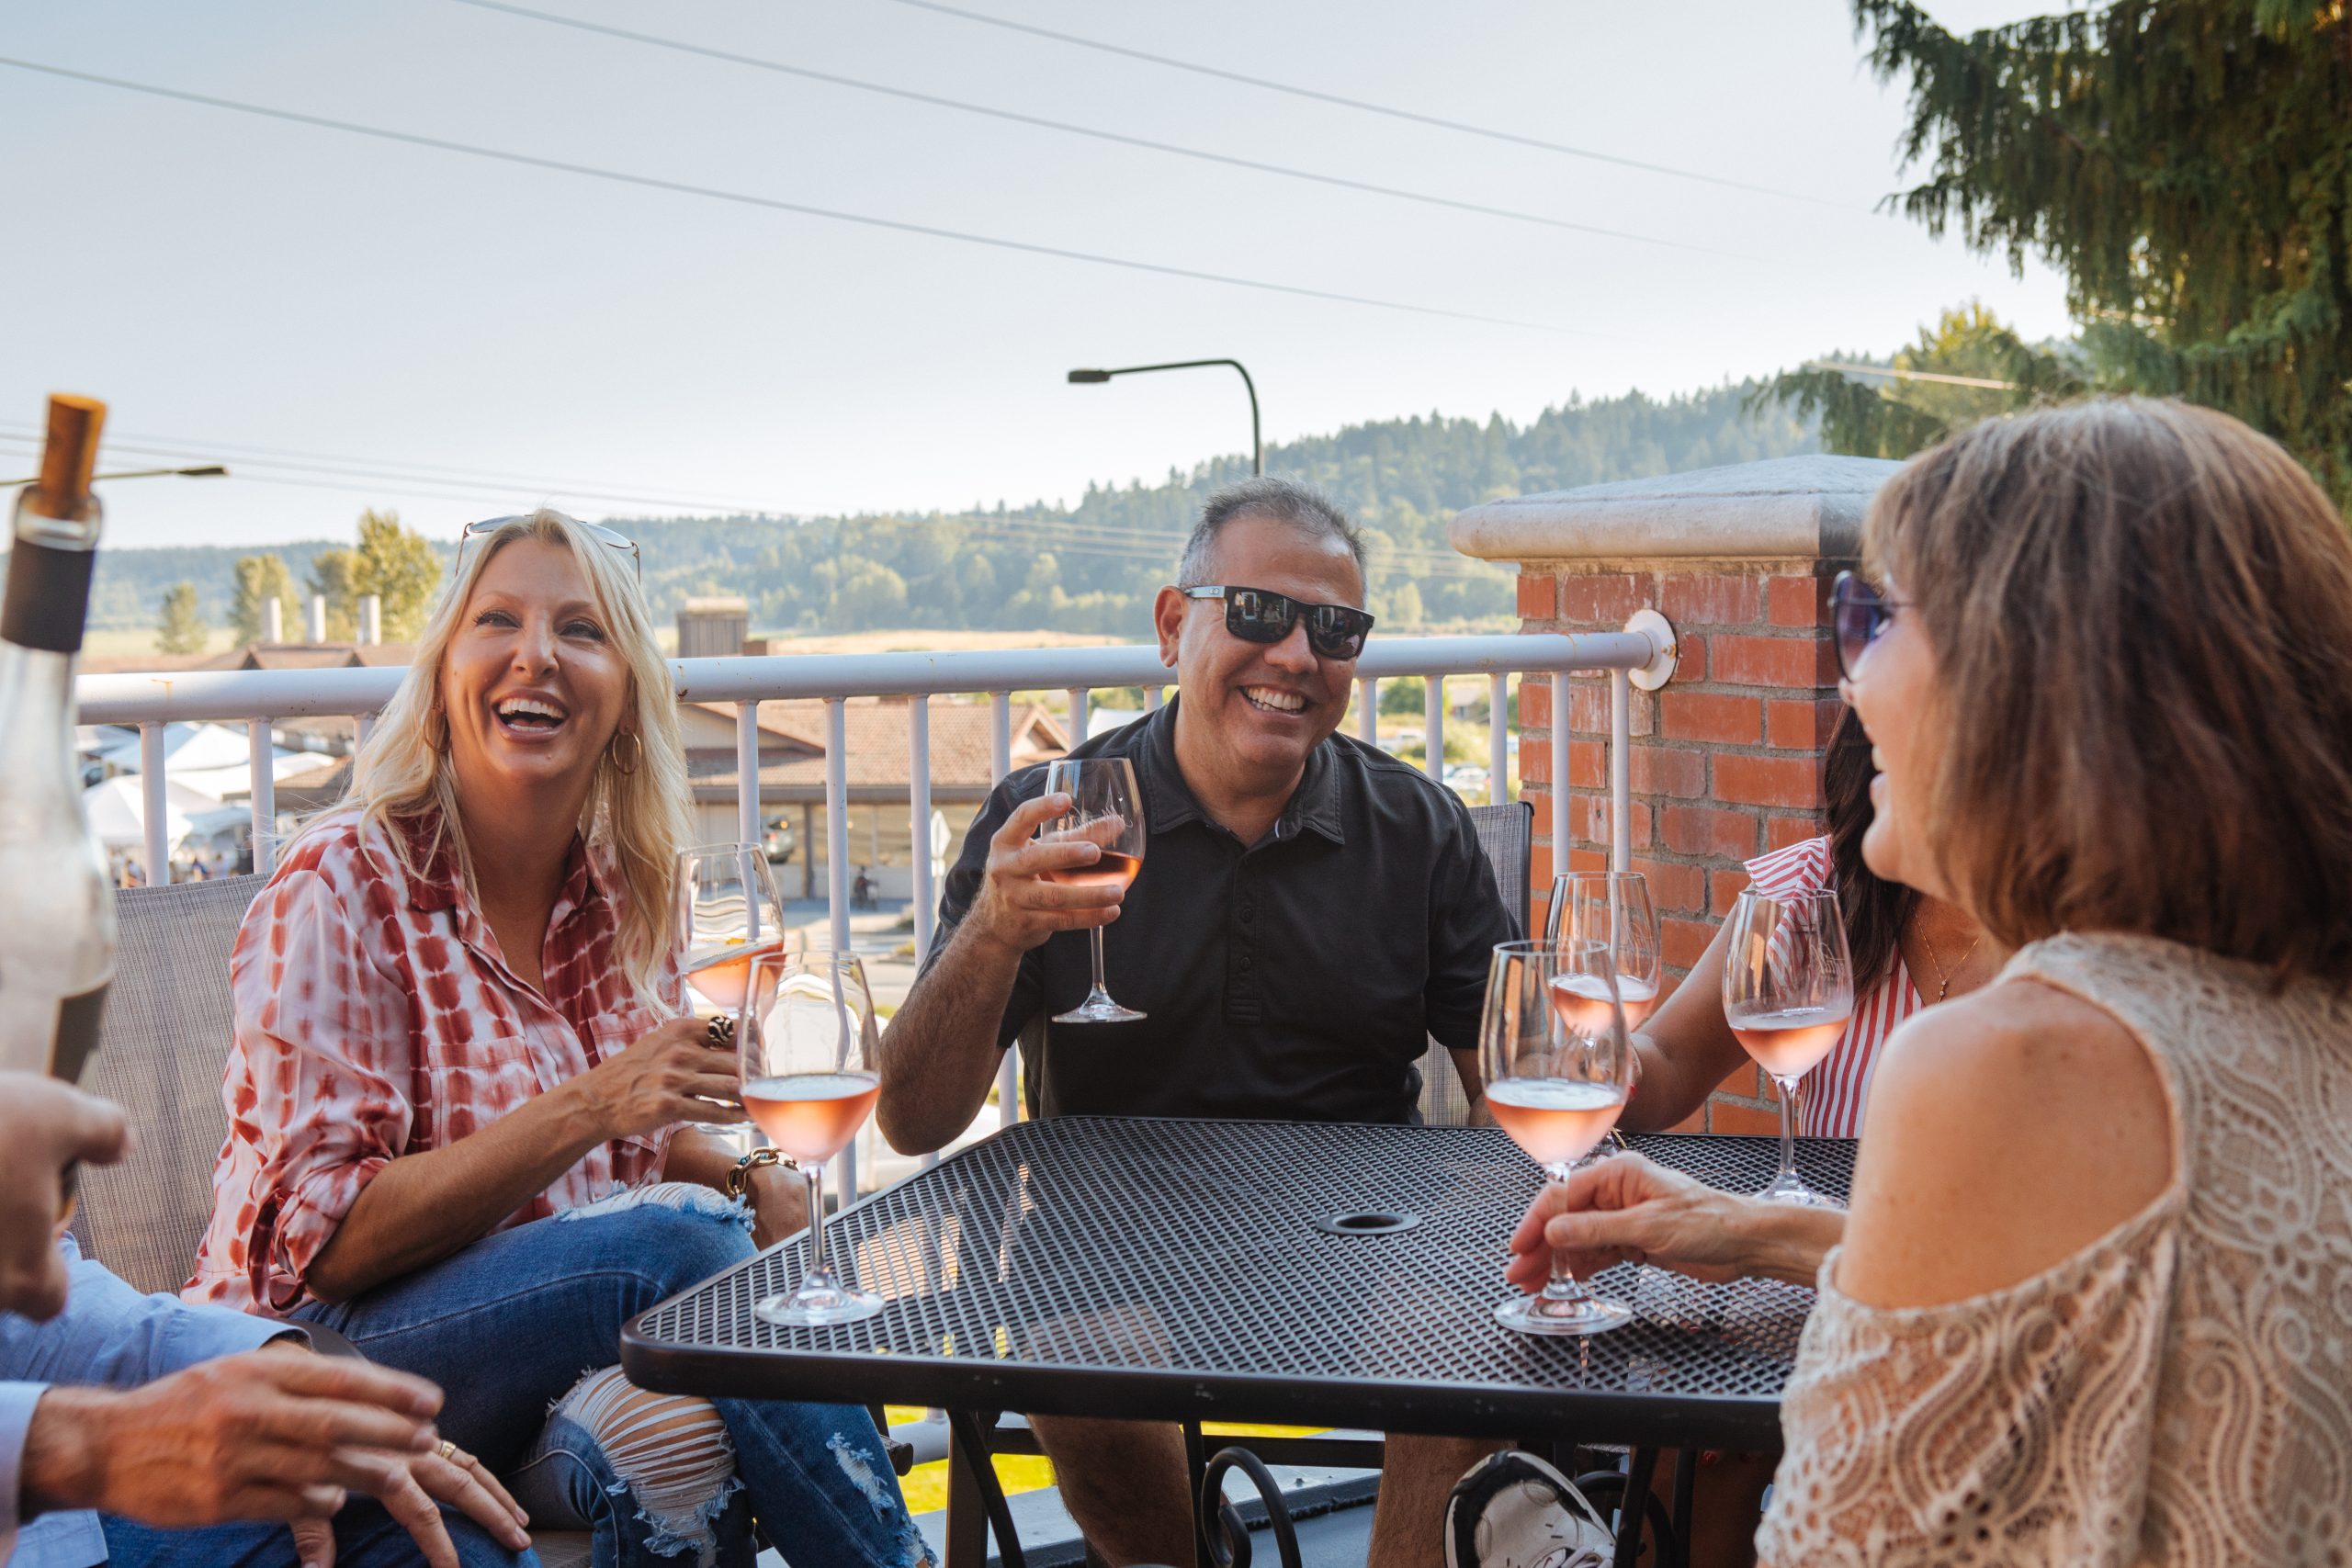 Groups enjoying Wine Tasting in Woodinville Washington.